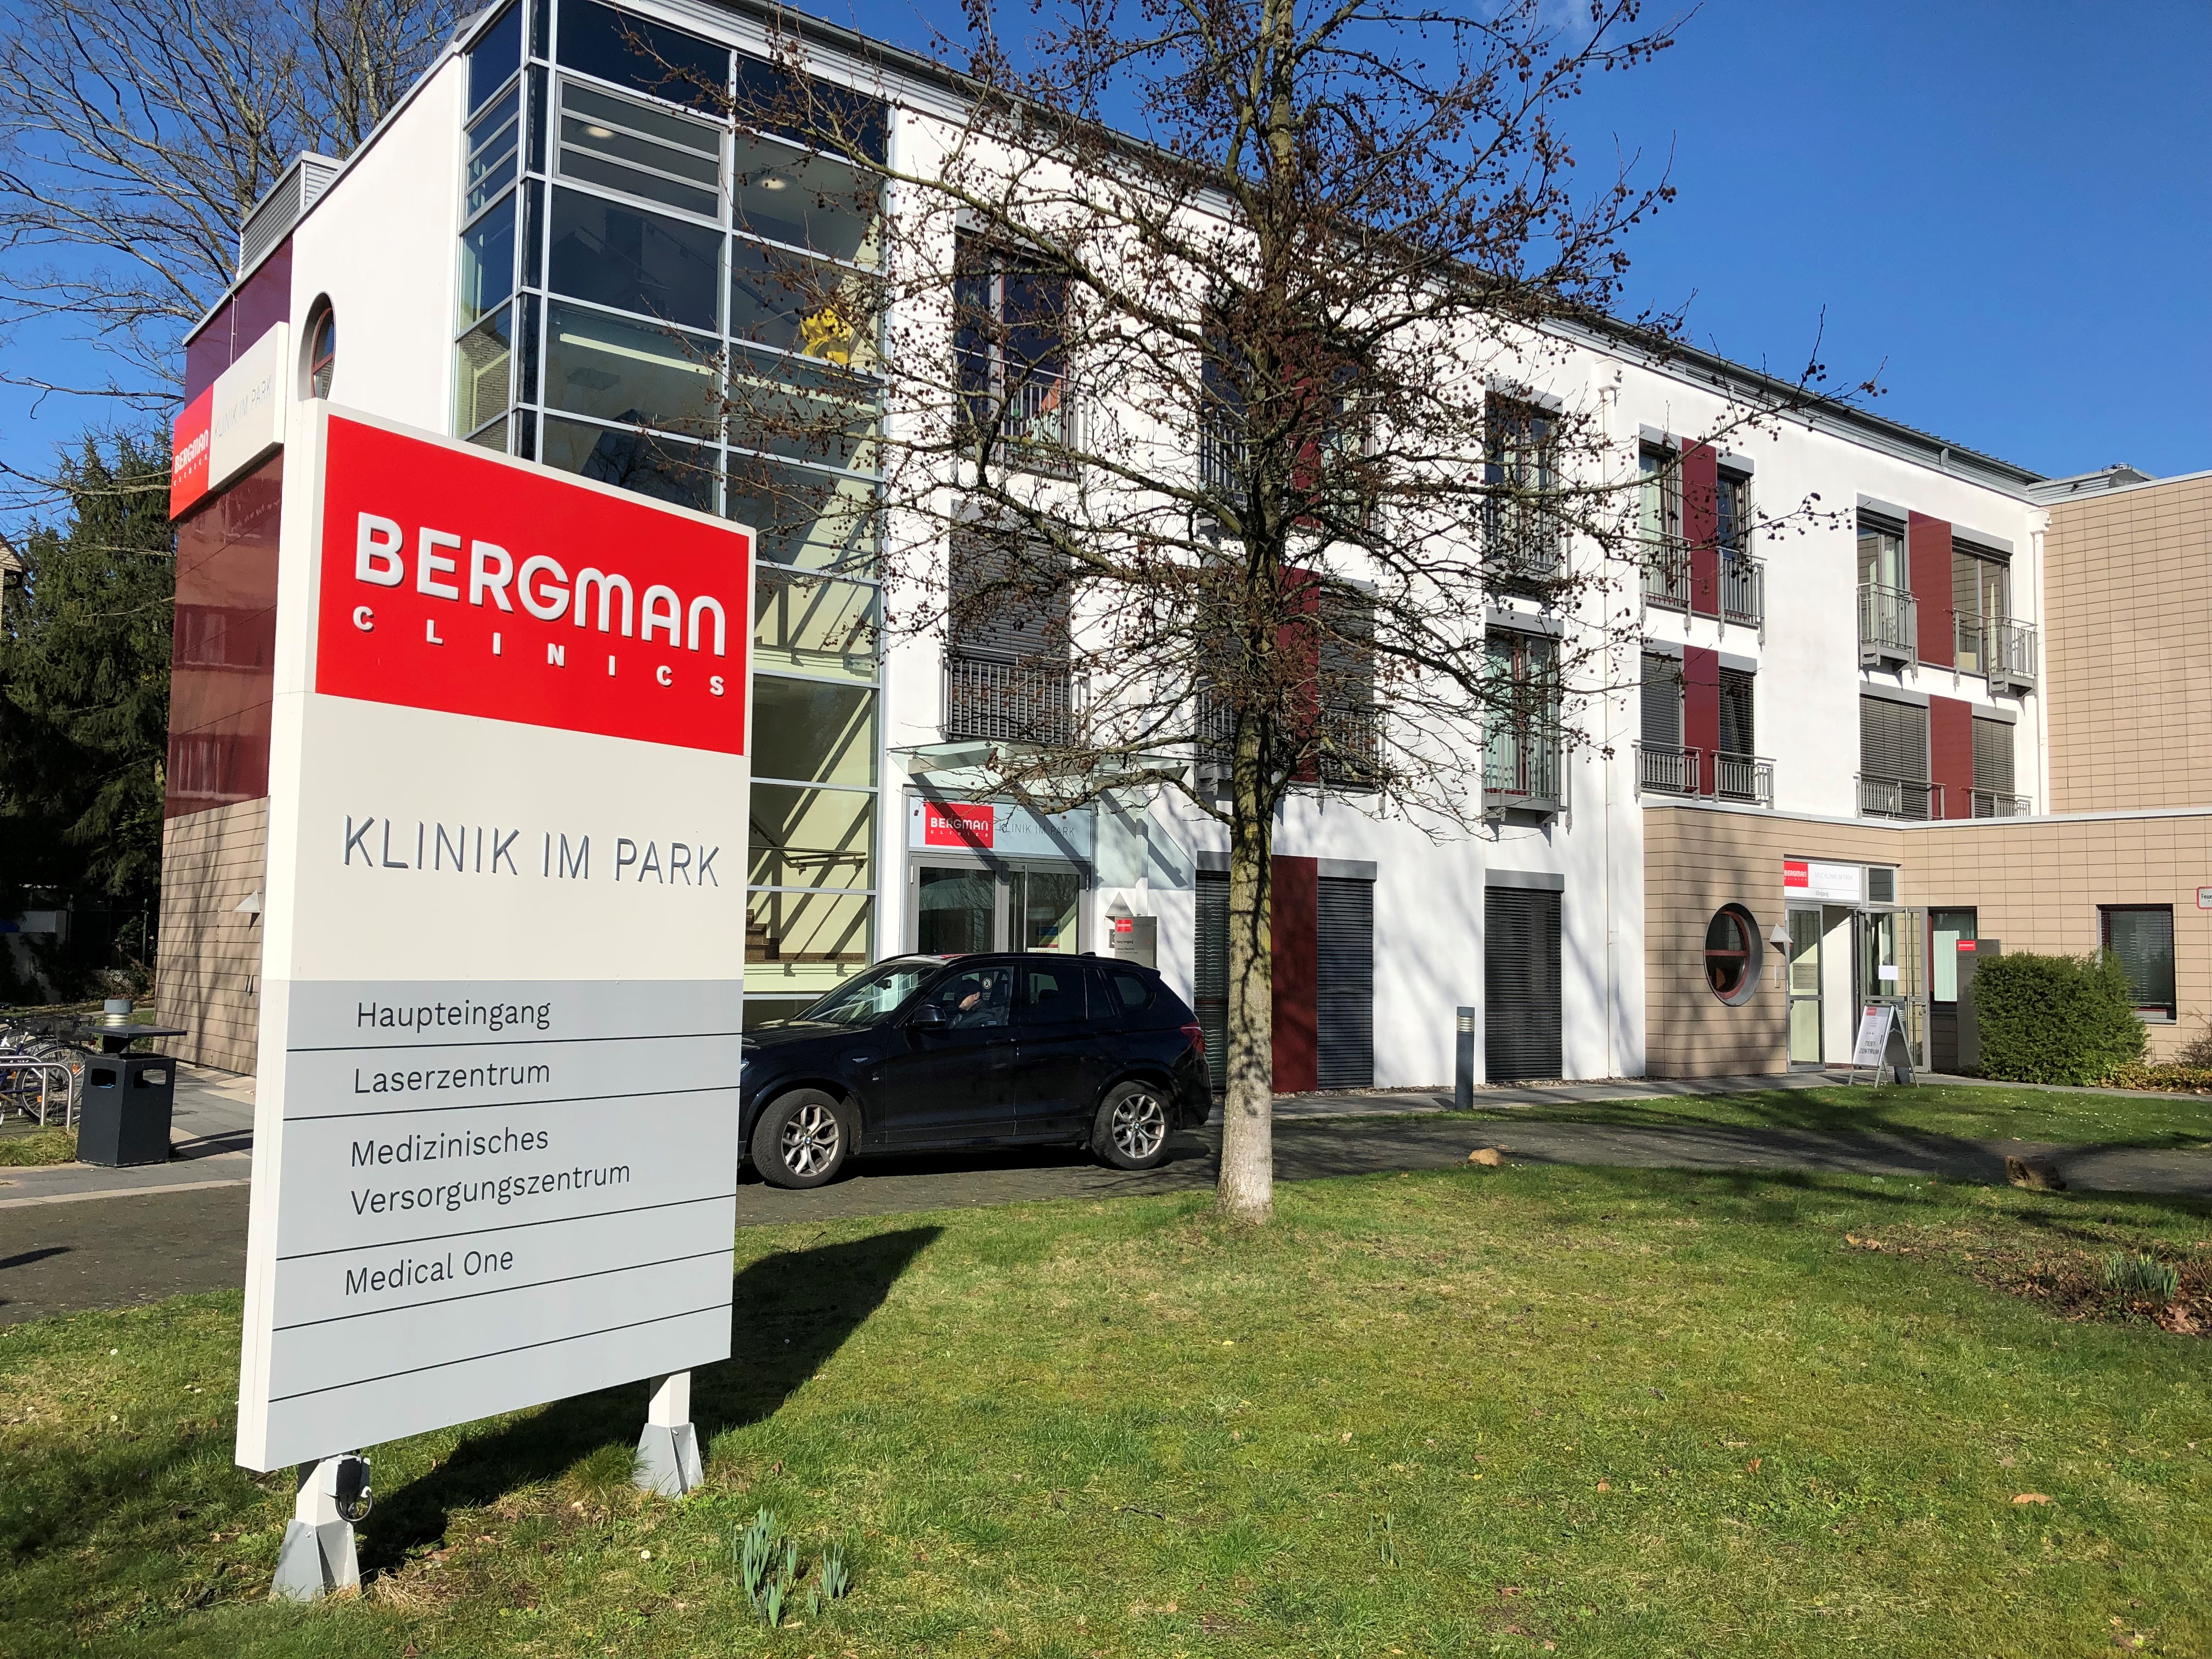 KIP Orthopädiehandel Sanitätshaus in Hilden - Außenansicht Bergman Klinik im Park